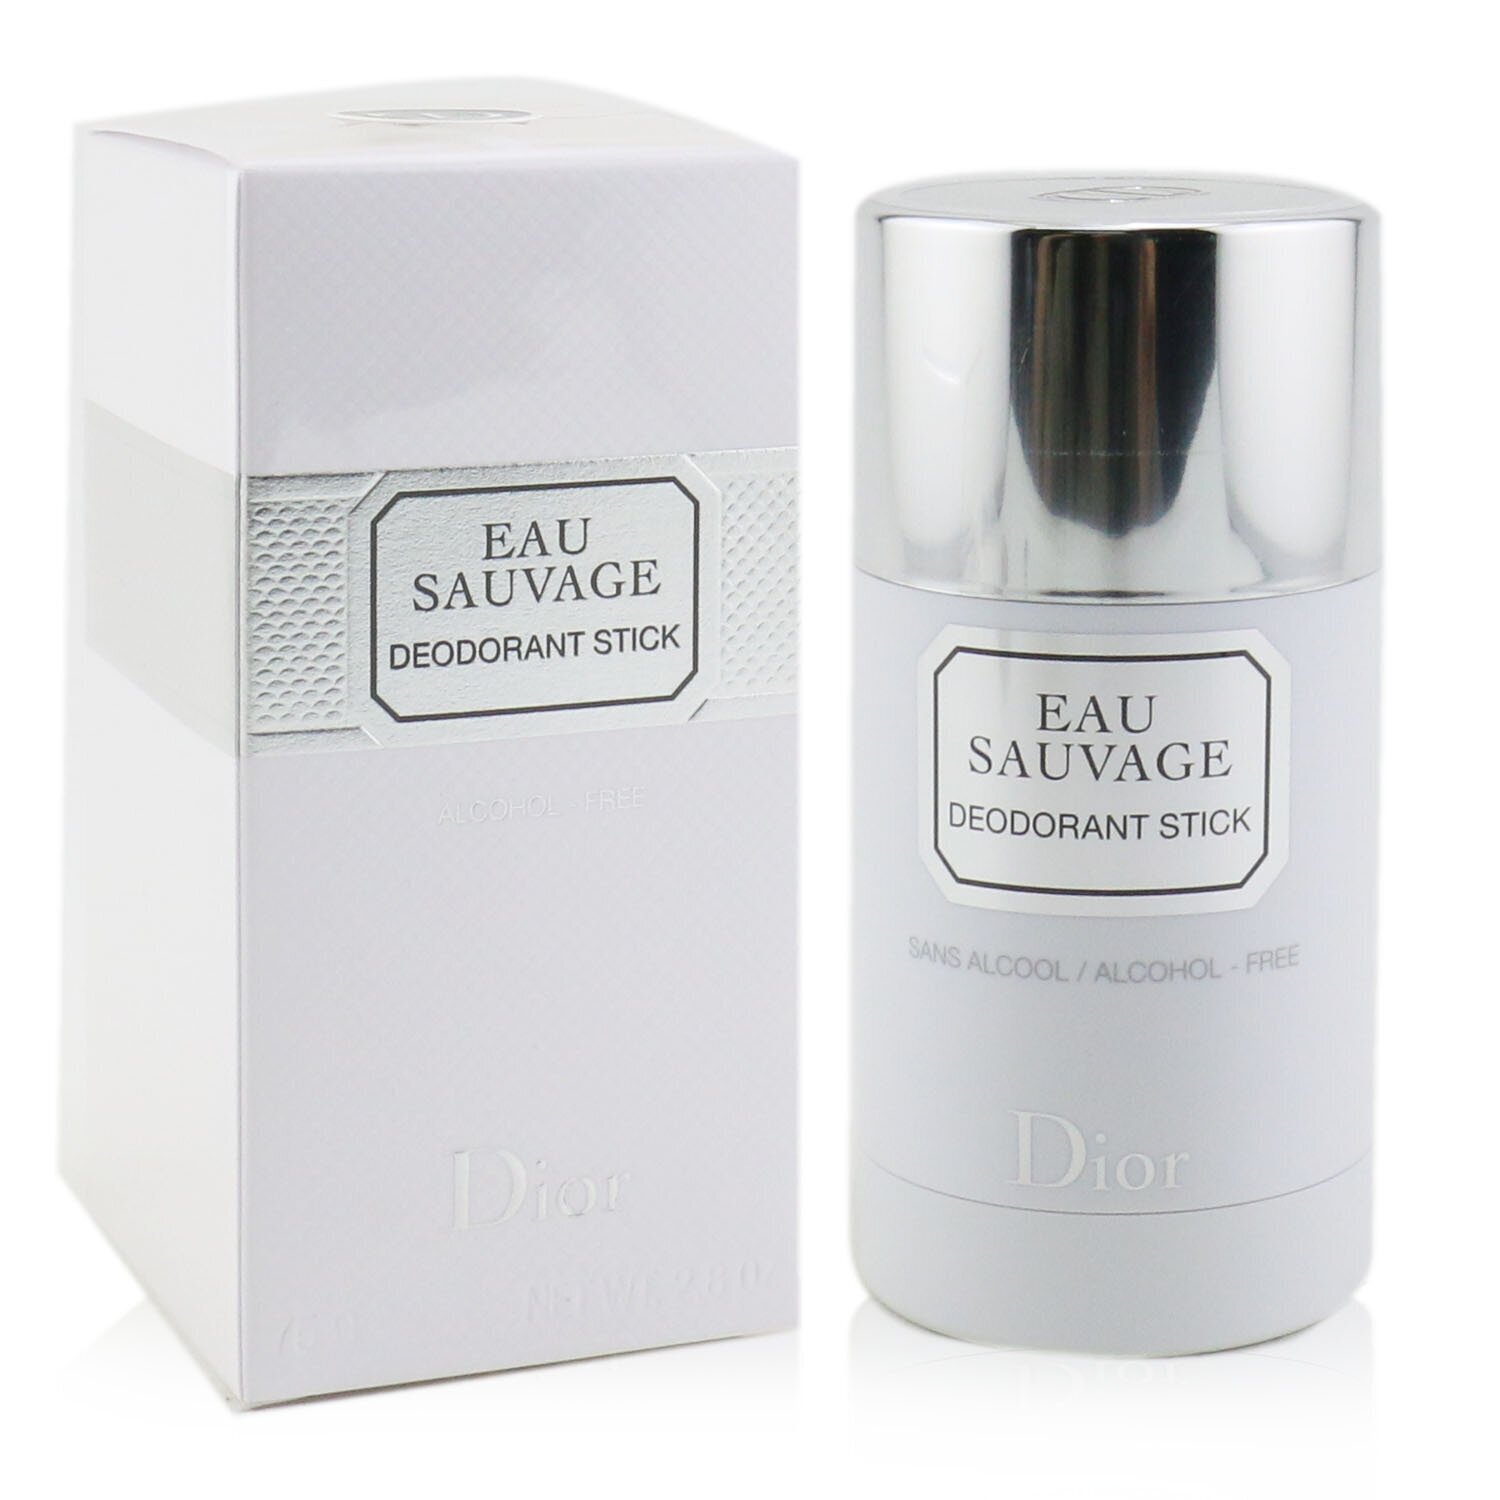 迪奧 Christian Dior - Eau Sauvage Deodorant Stick體香膏(不含酒精)